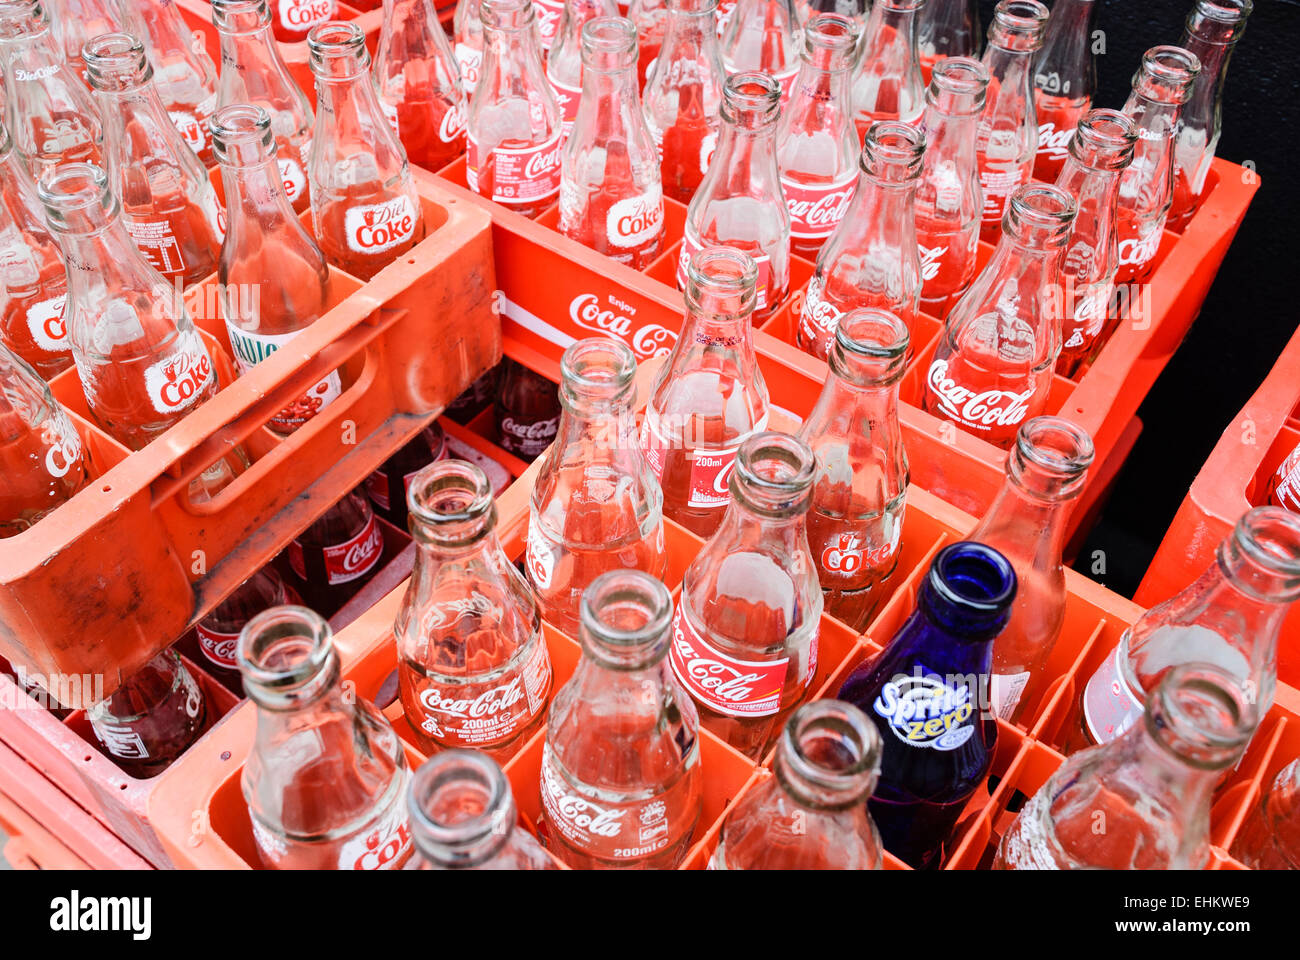 Kisten mit leere Coca-Cola-Flaschen Stockfotografie - Alamy